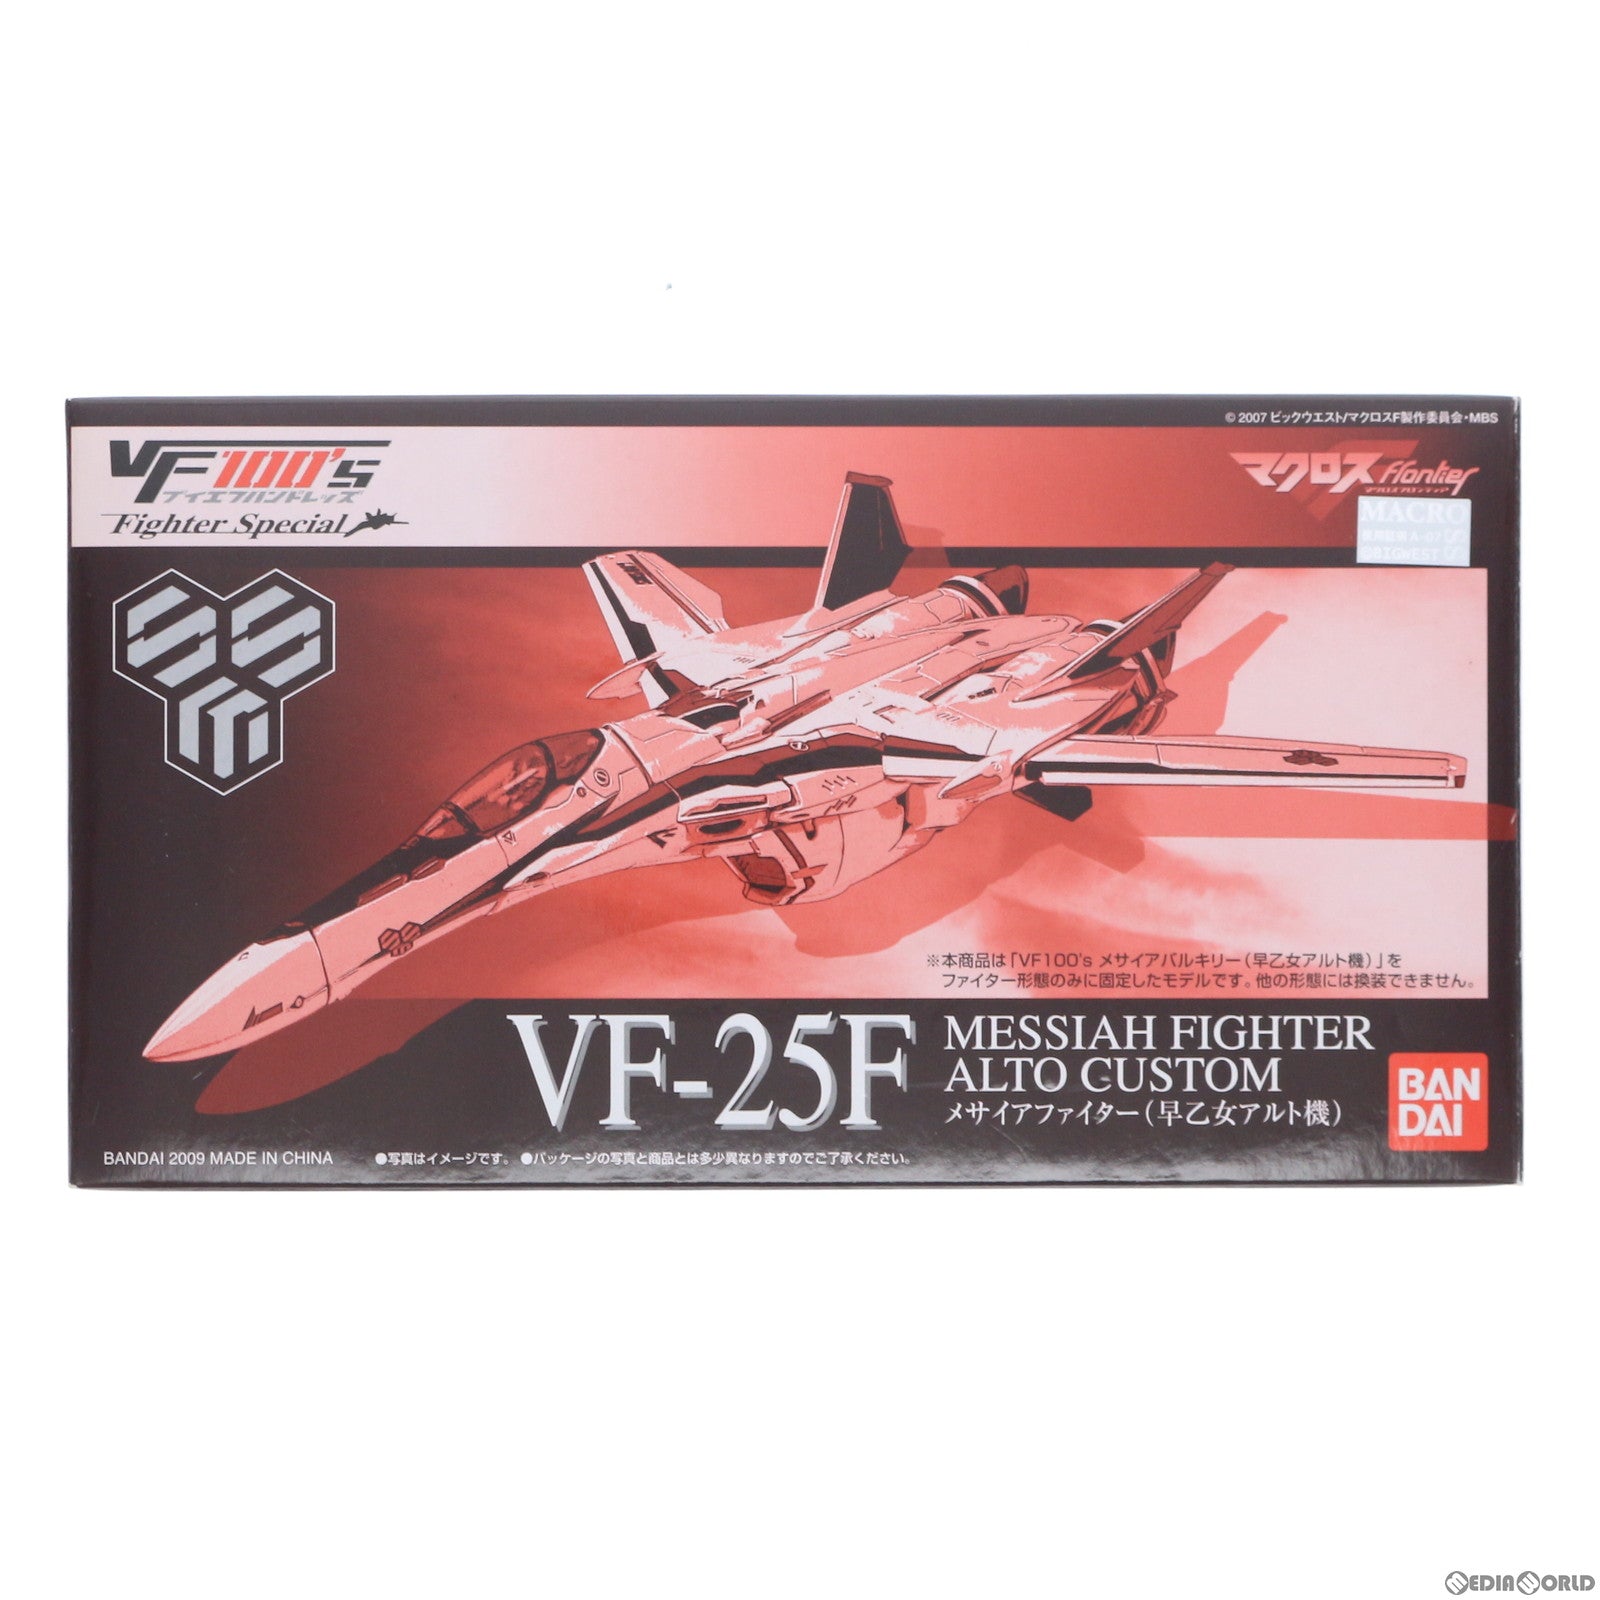 【中古即納】[FIG]キャラホビ2009限定 VF100's FighterSpecial VF-25F メサイアファイター(早乙女アルト機) マクロスF(フロンティア) 1/100 完成品 可動フィギュア バンダイ(20090831)